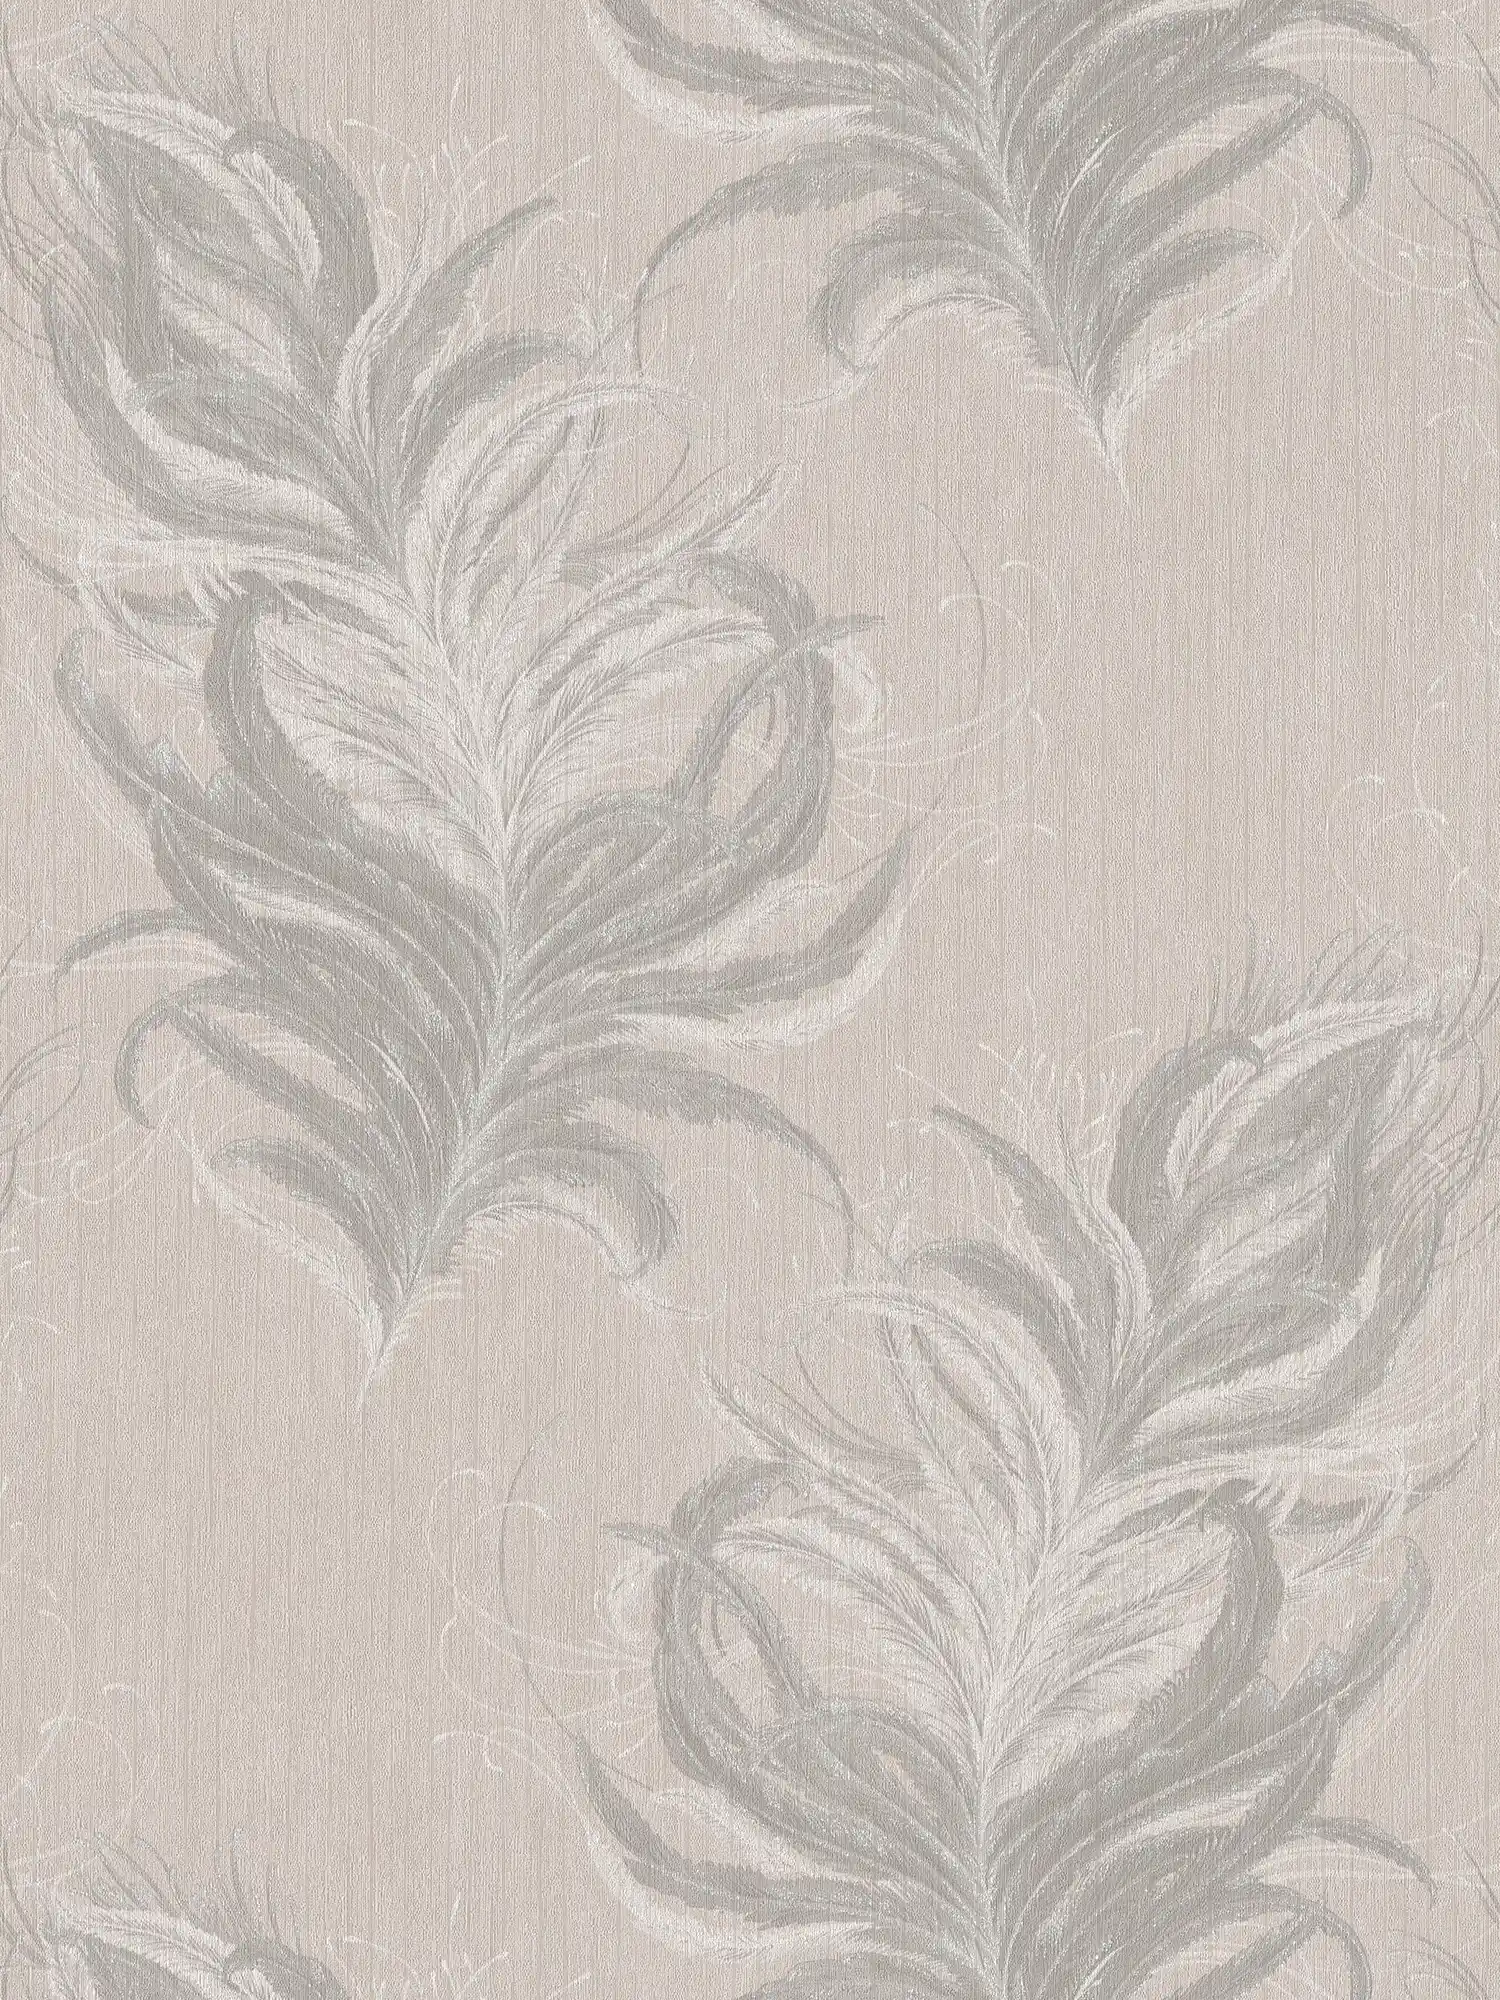         Vliestapete mit Federn Design & Struktur Glanzeffekt – Grau, Weiß
    